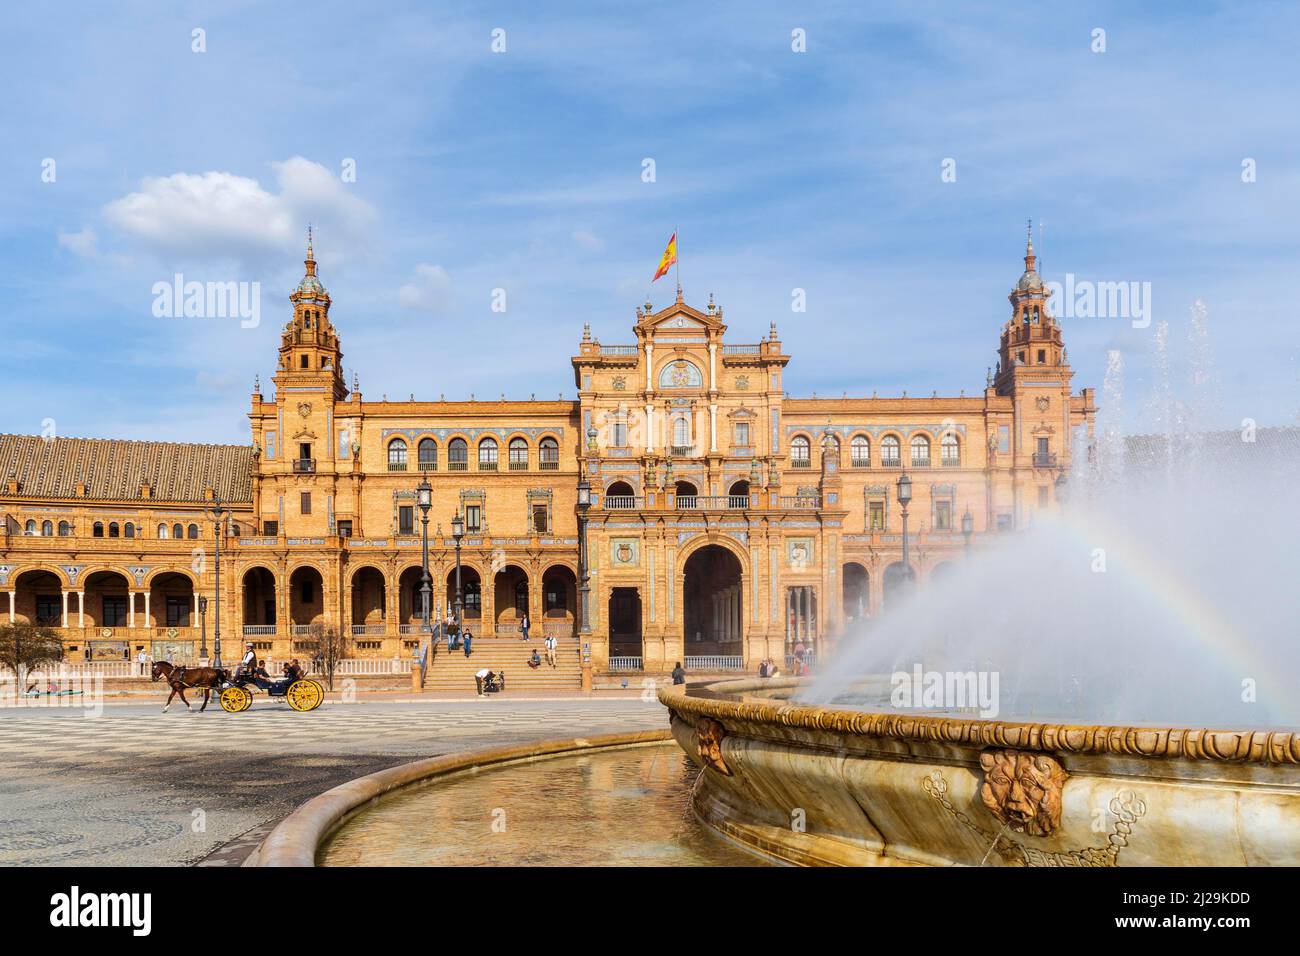 Das berühmteste Wahrzeichen an der Plaza de Espana mit dem Brunnen im Vordergrund, Sevilla, Spanien Stockfoto